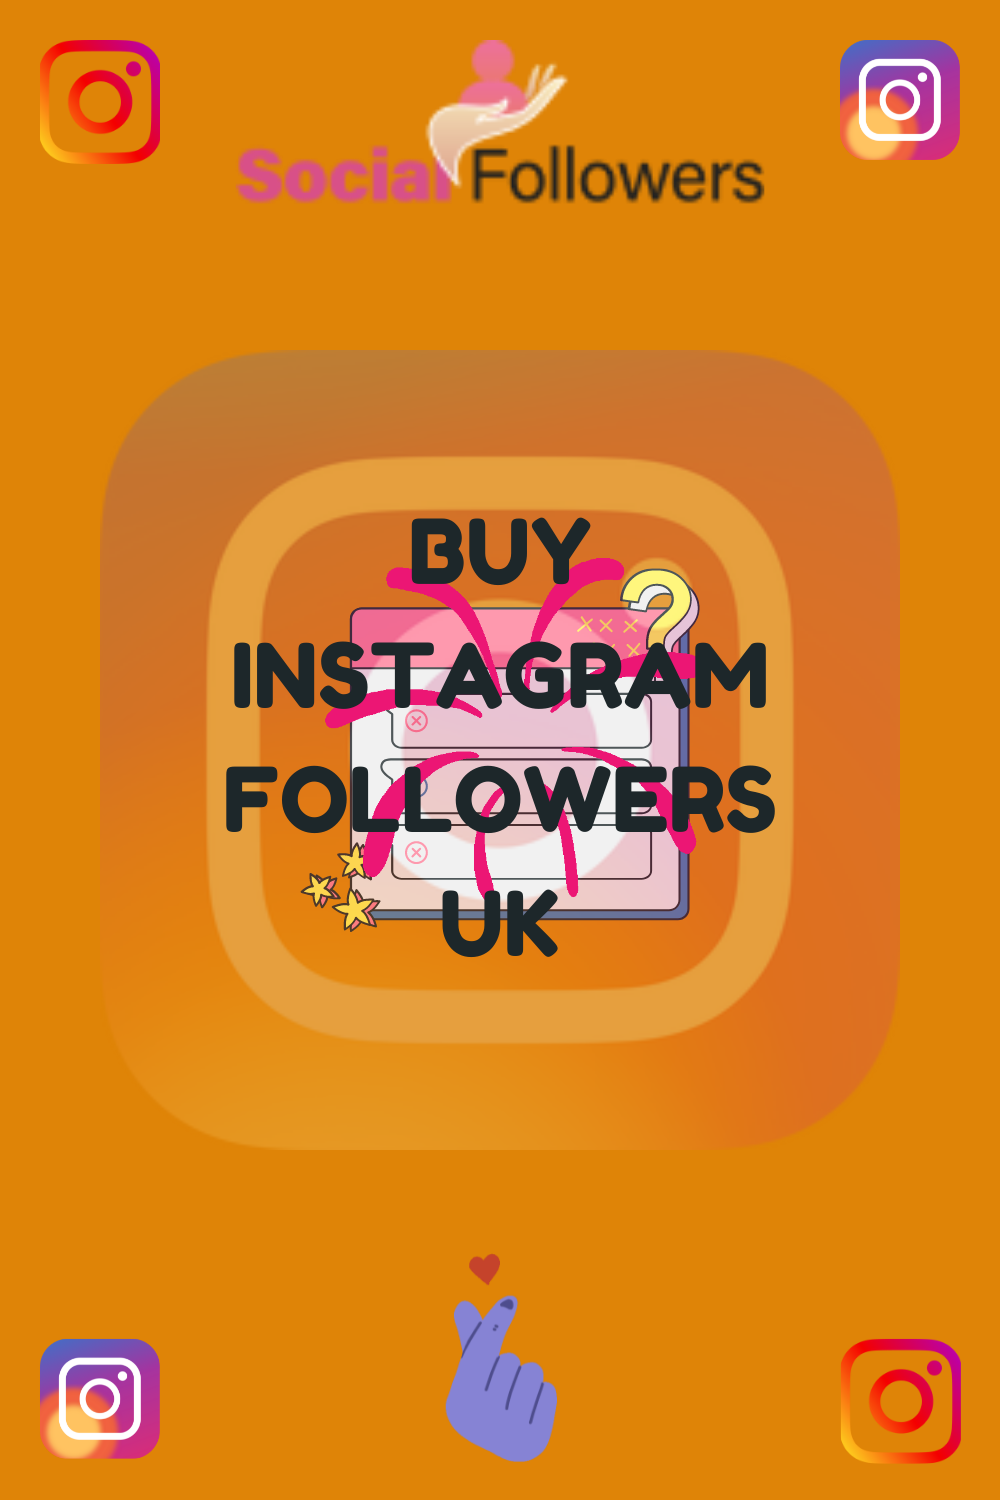 Buy Instagram followers UK